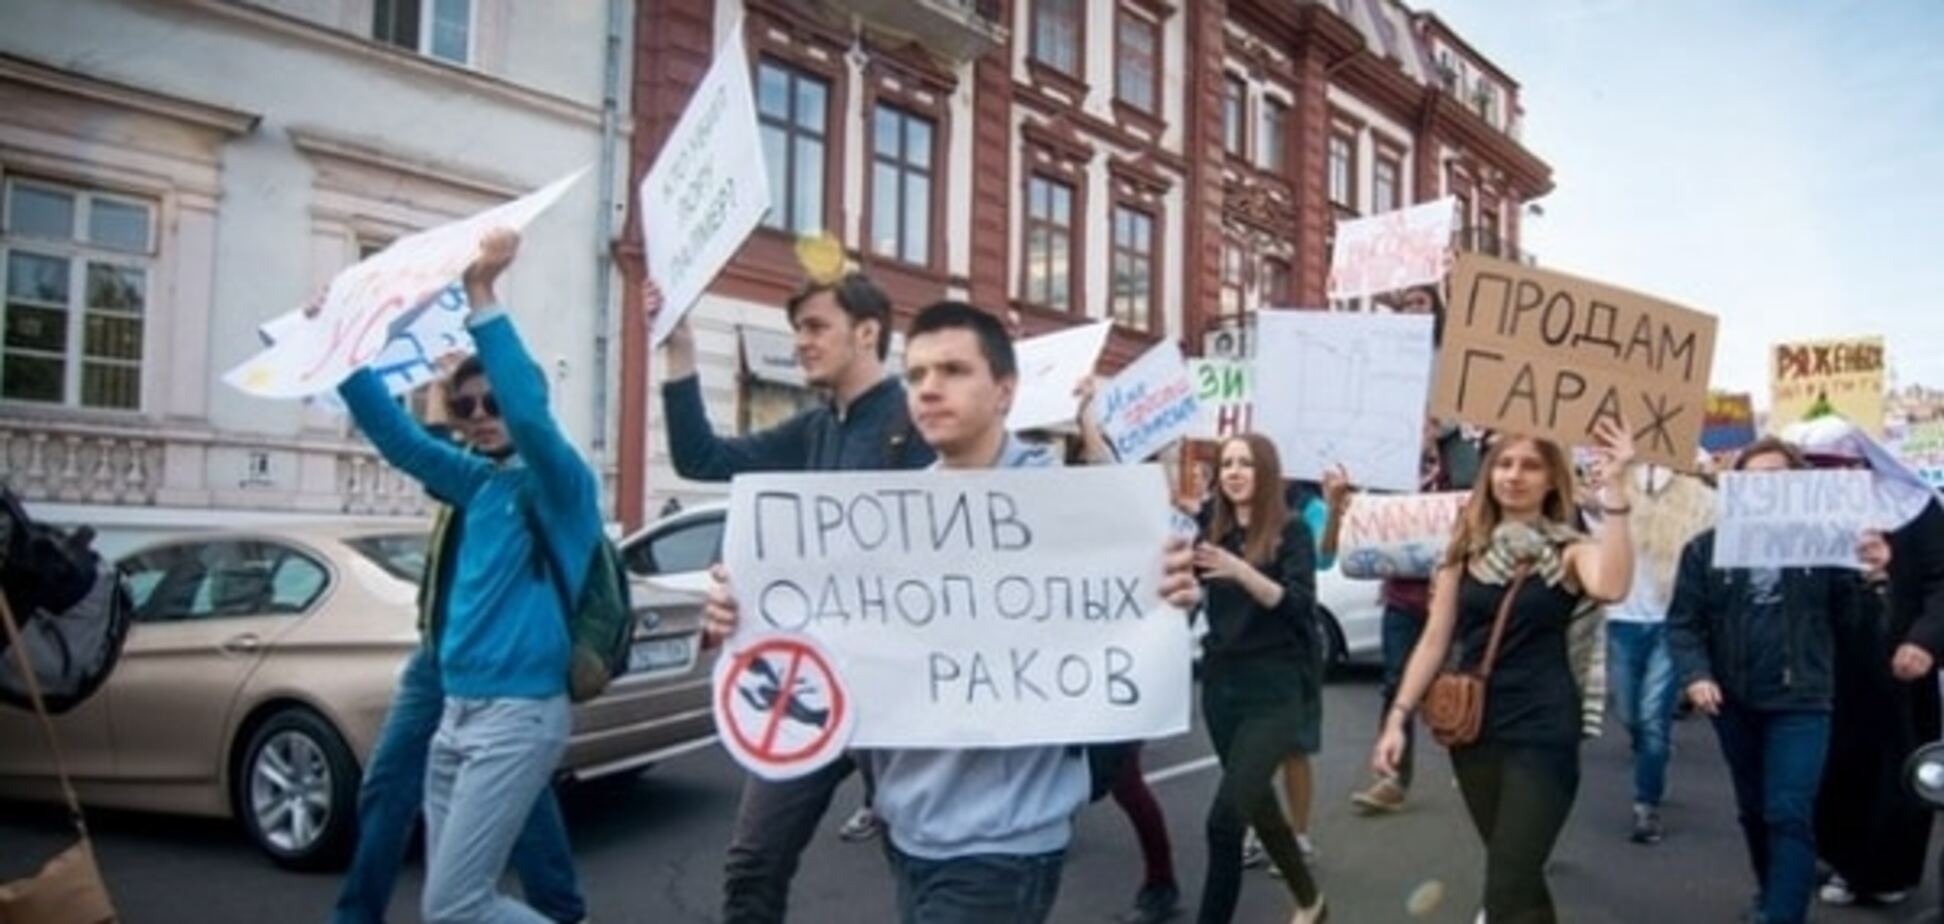 Против однополых раков: в Одессе устроили абсурдную 'монстрацию'. Фоторепортаж